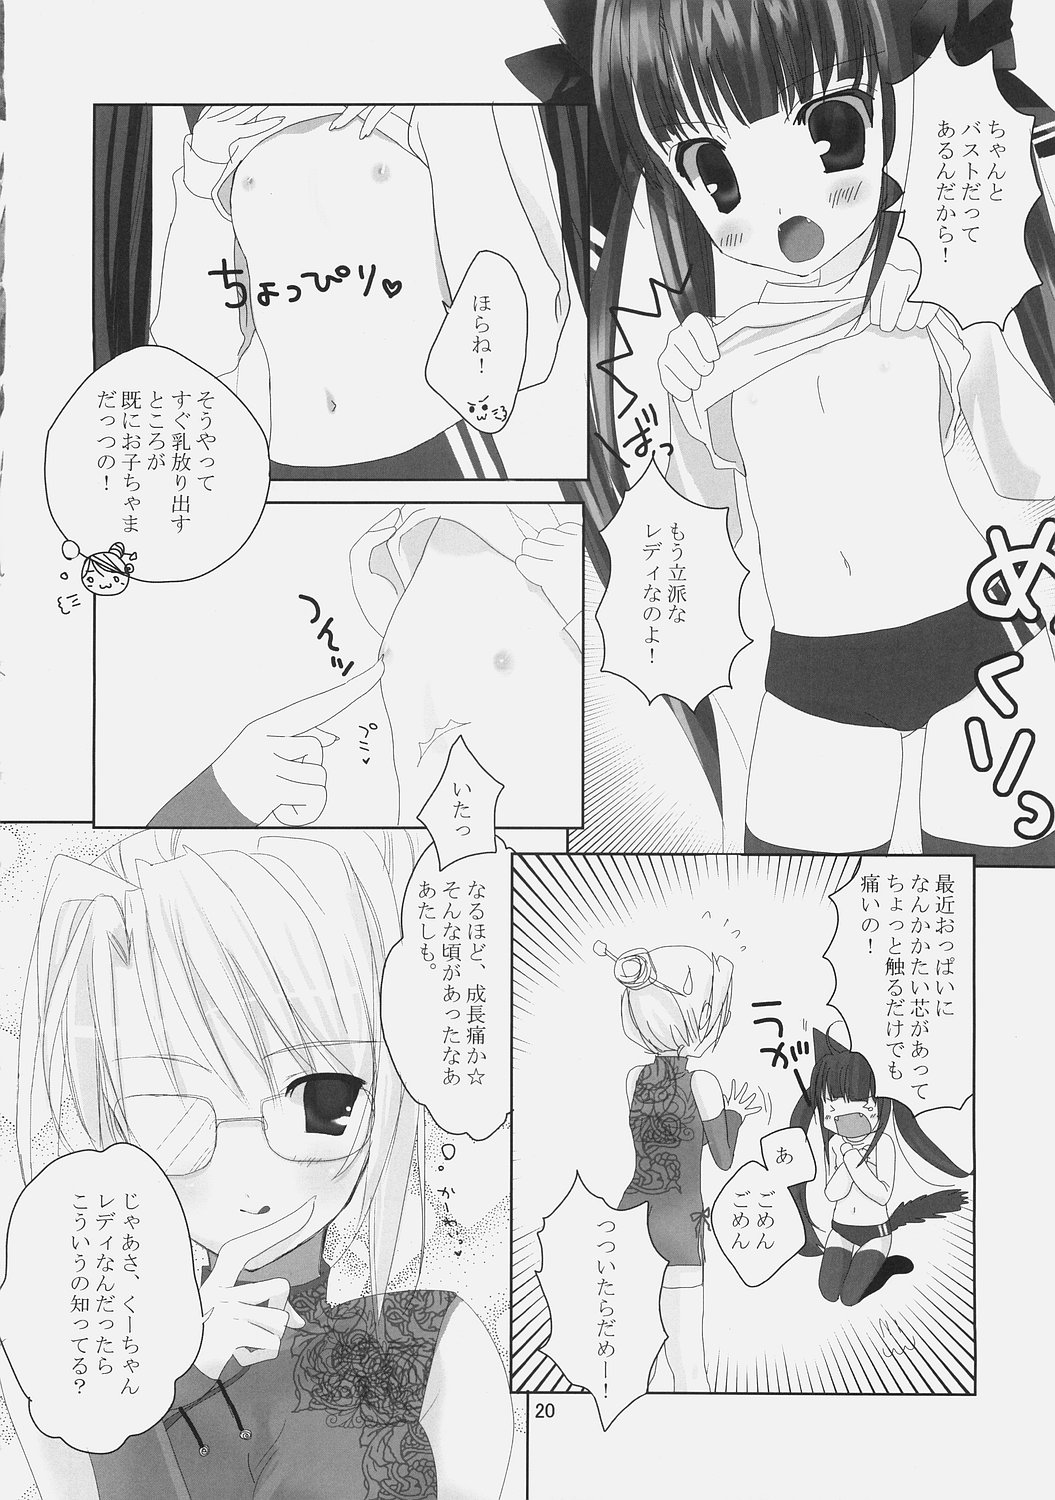 (ComiComi9) [Umi No Sachi Teishoku, Chimaroni?, Fake fur, (Kakifly, Chimaro, Furu)] PanPanPangya (Sukatto Golf Pangya) page 19 full